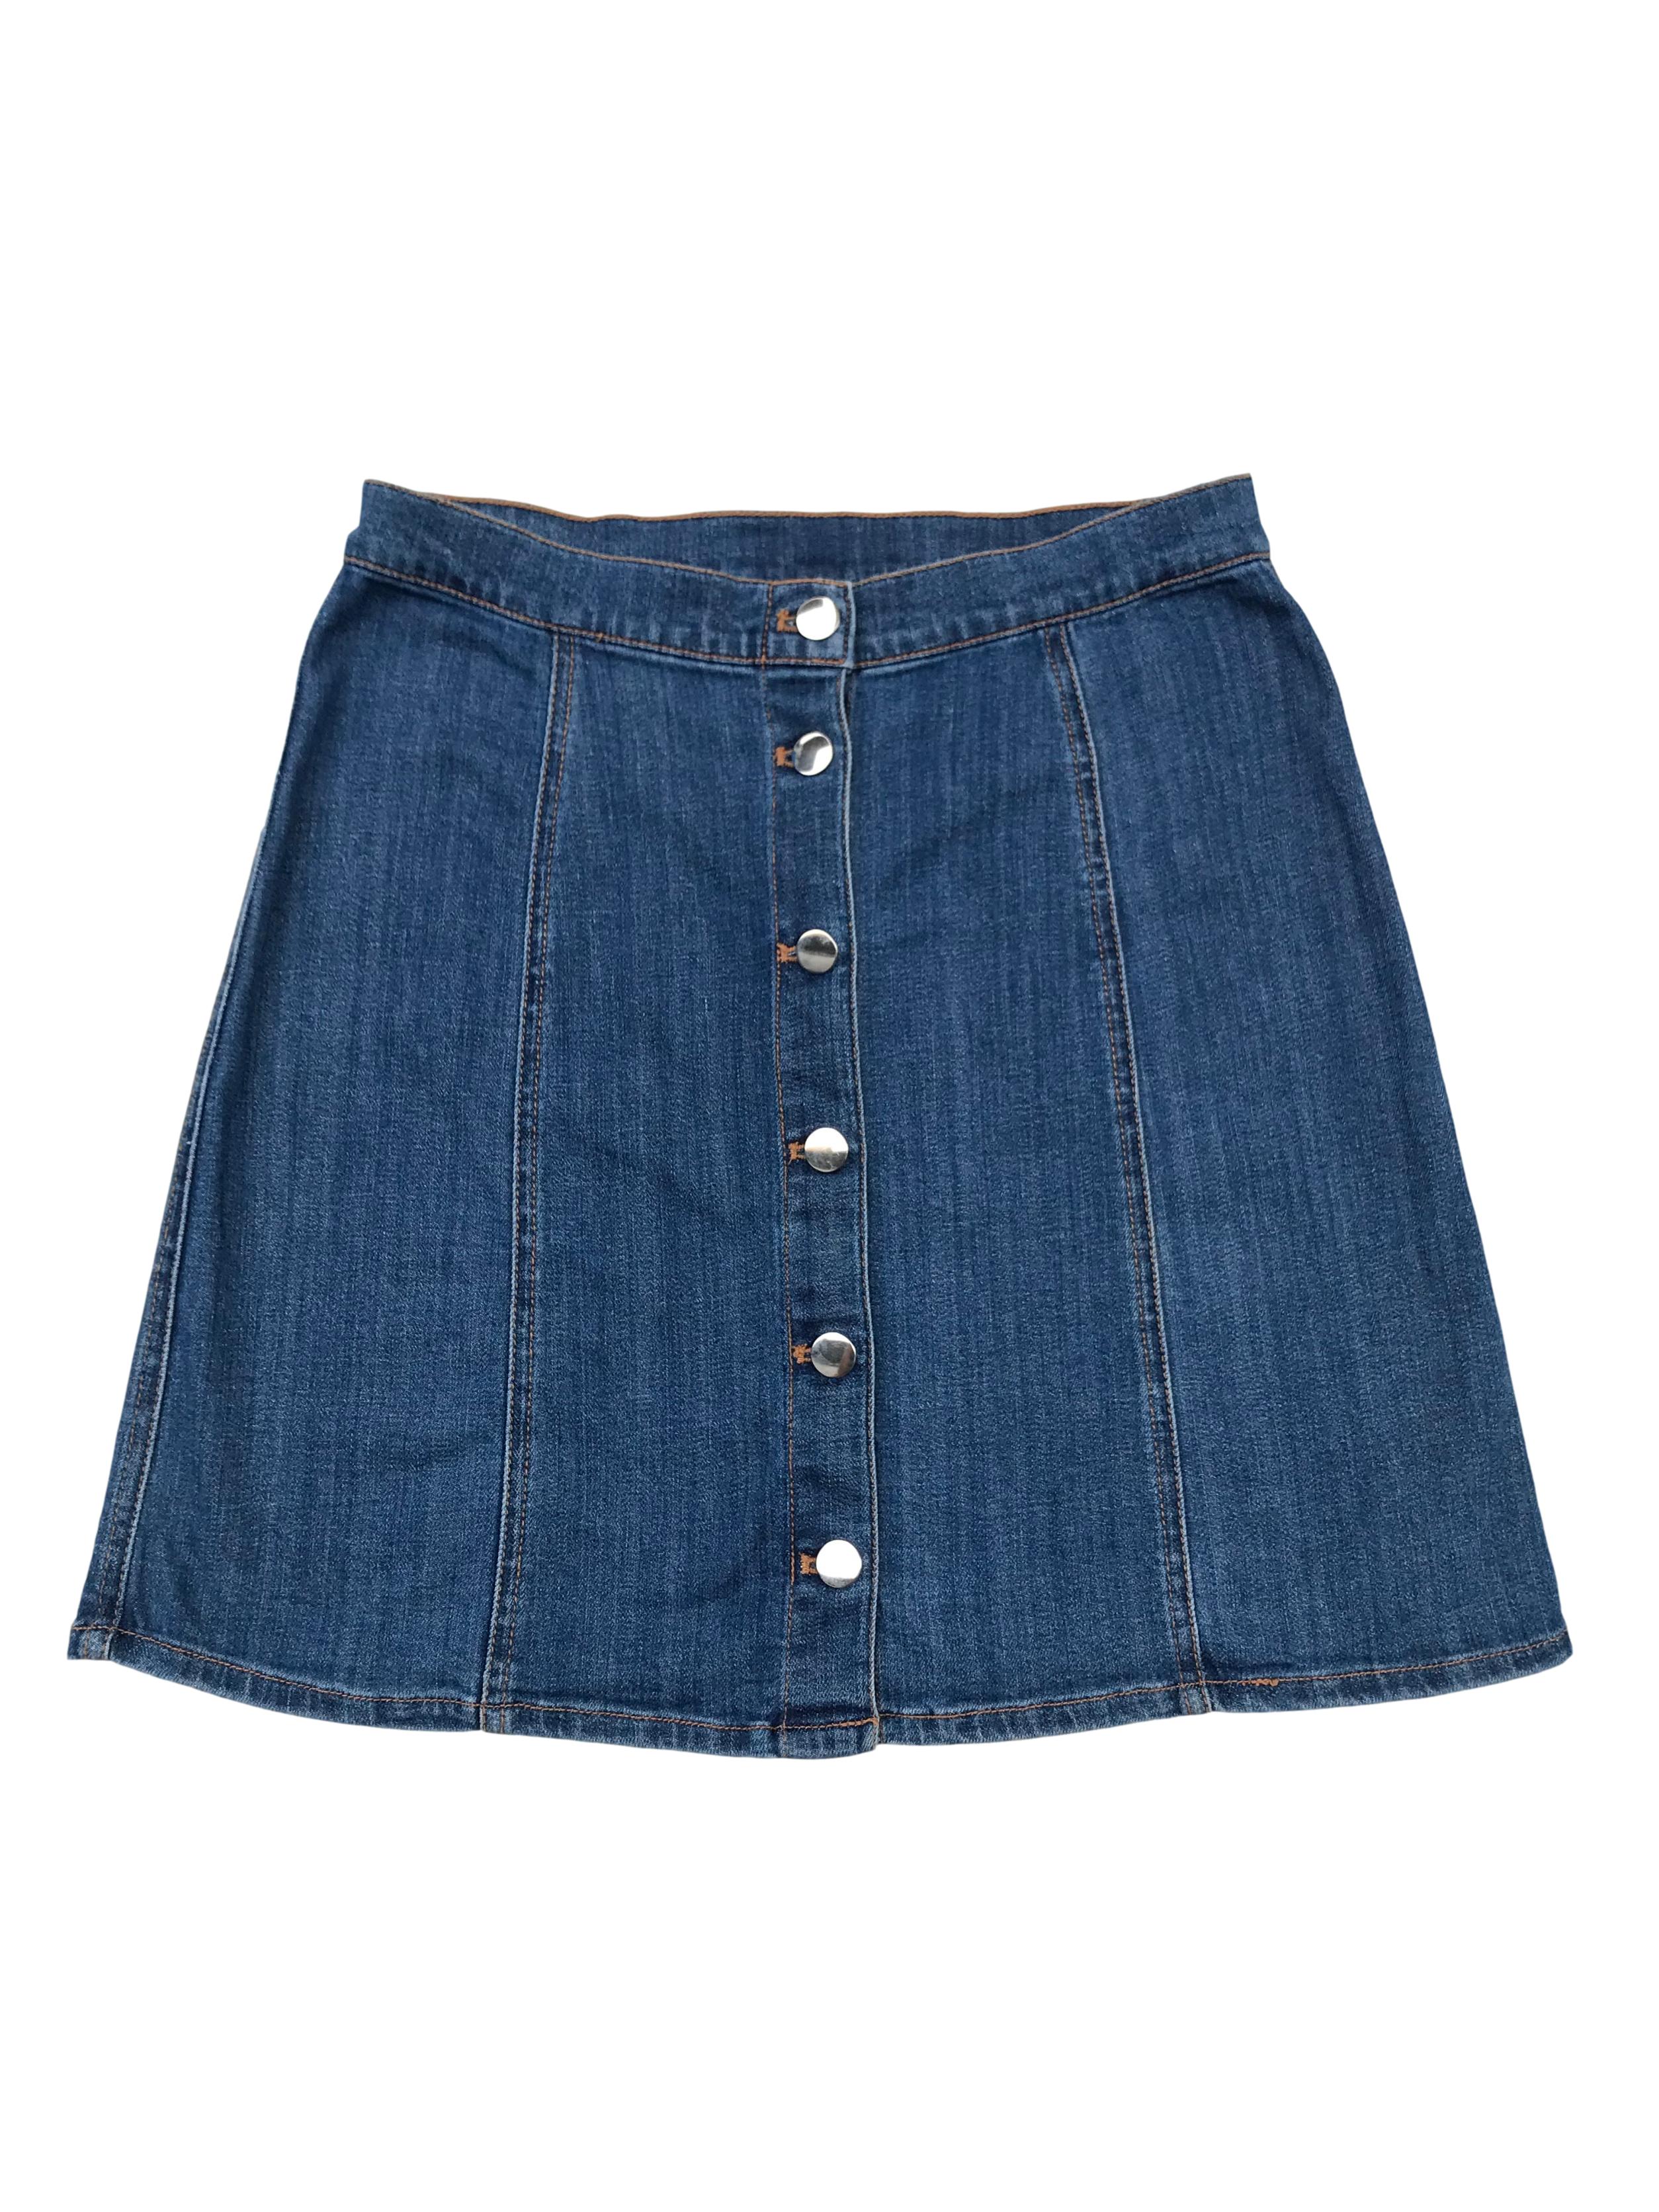 Falda de jean H&M con botones delanteros, corte A. Cintura: 72 cm, largo: 45 cm.